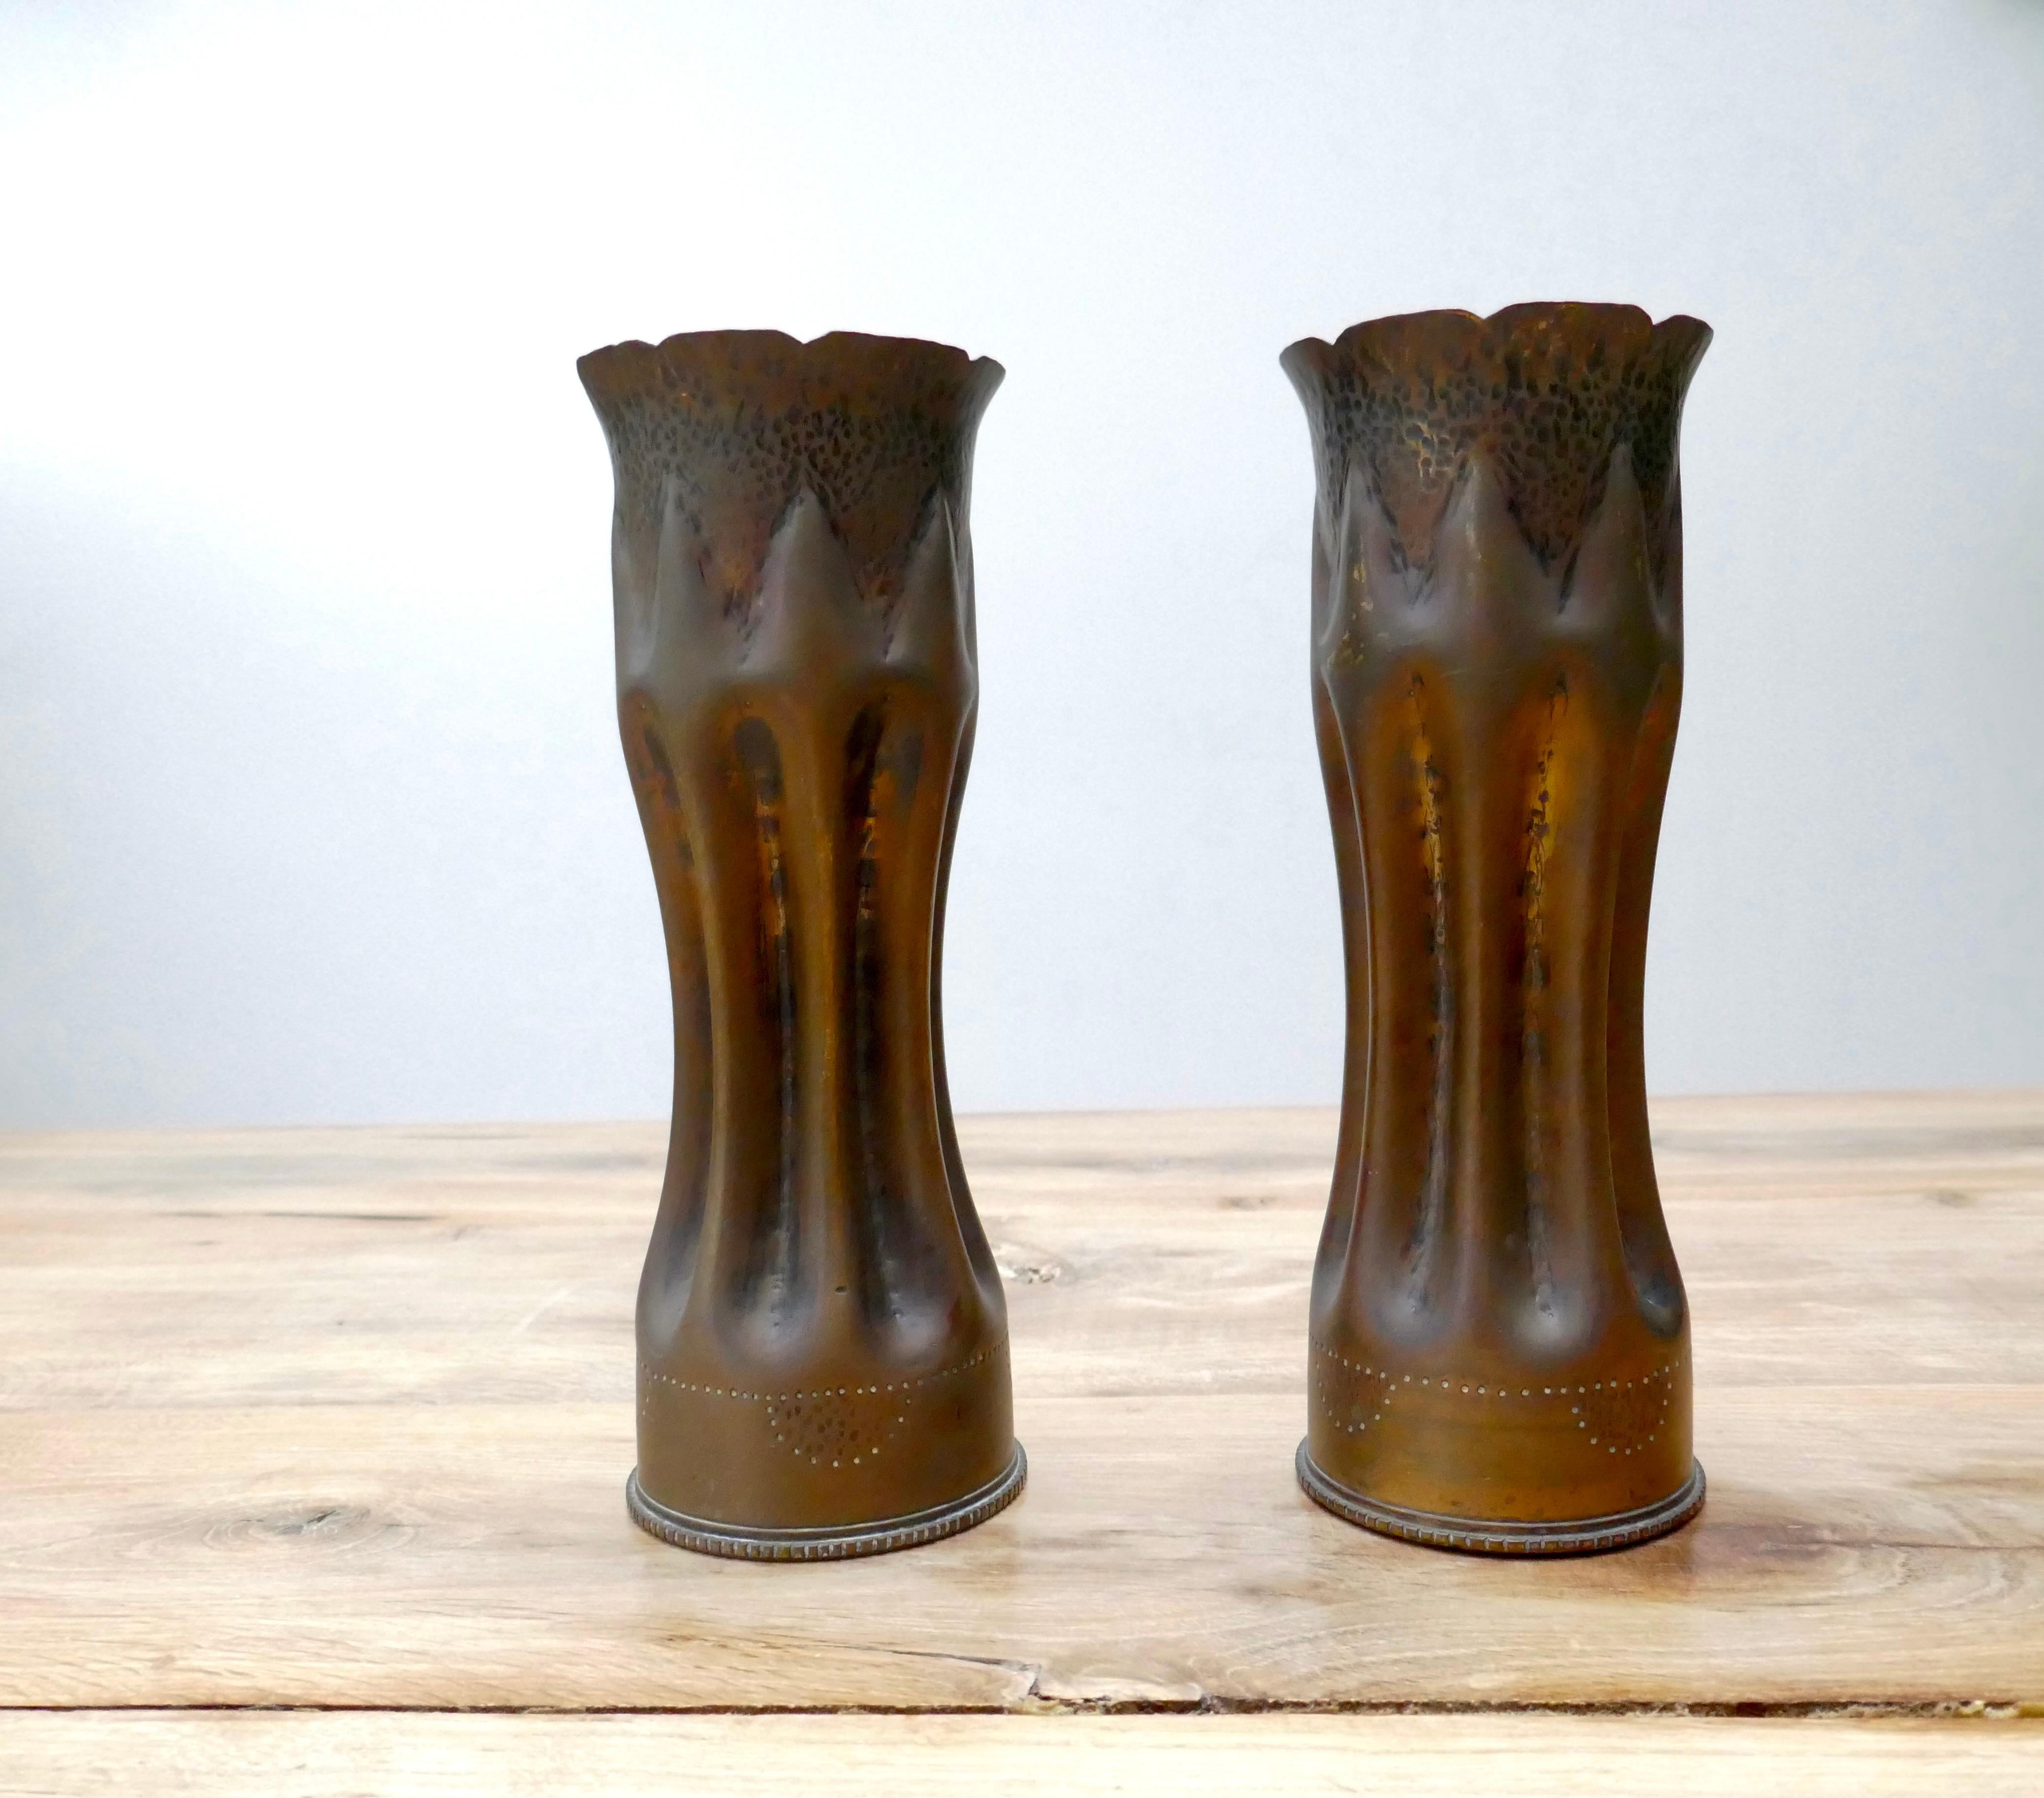 Paar französische Vasen der Grabenkunst / Patronenhülsen aus dem Ersten Weltkrieg Vasen.

Die Objekte der Grabenkunst sind Träger der Erinnerungen der Soldaten und erinnern an den Konflikt, dem sie ausgesetzt waren. Hergestellt aus recyceltem